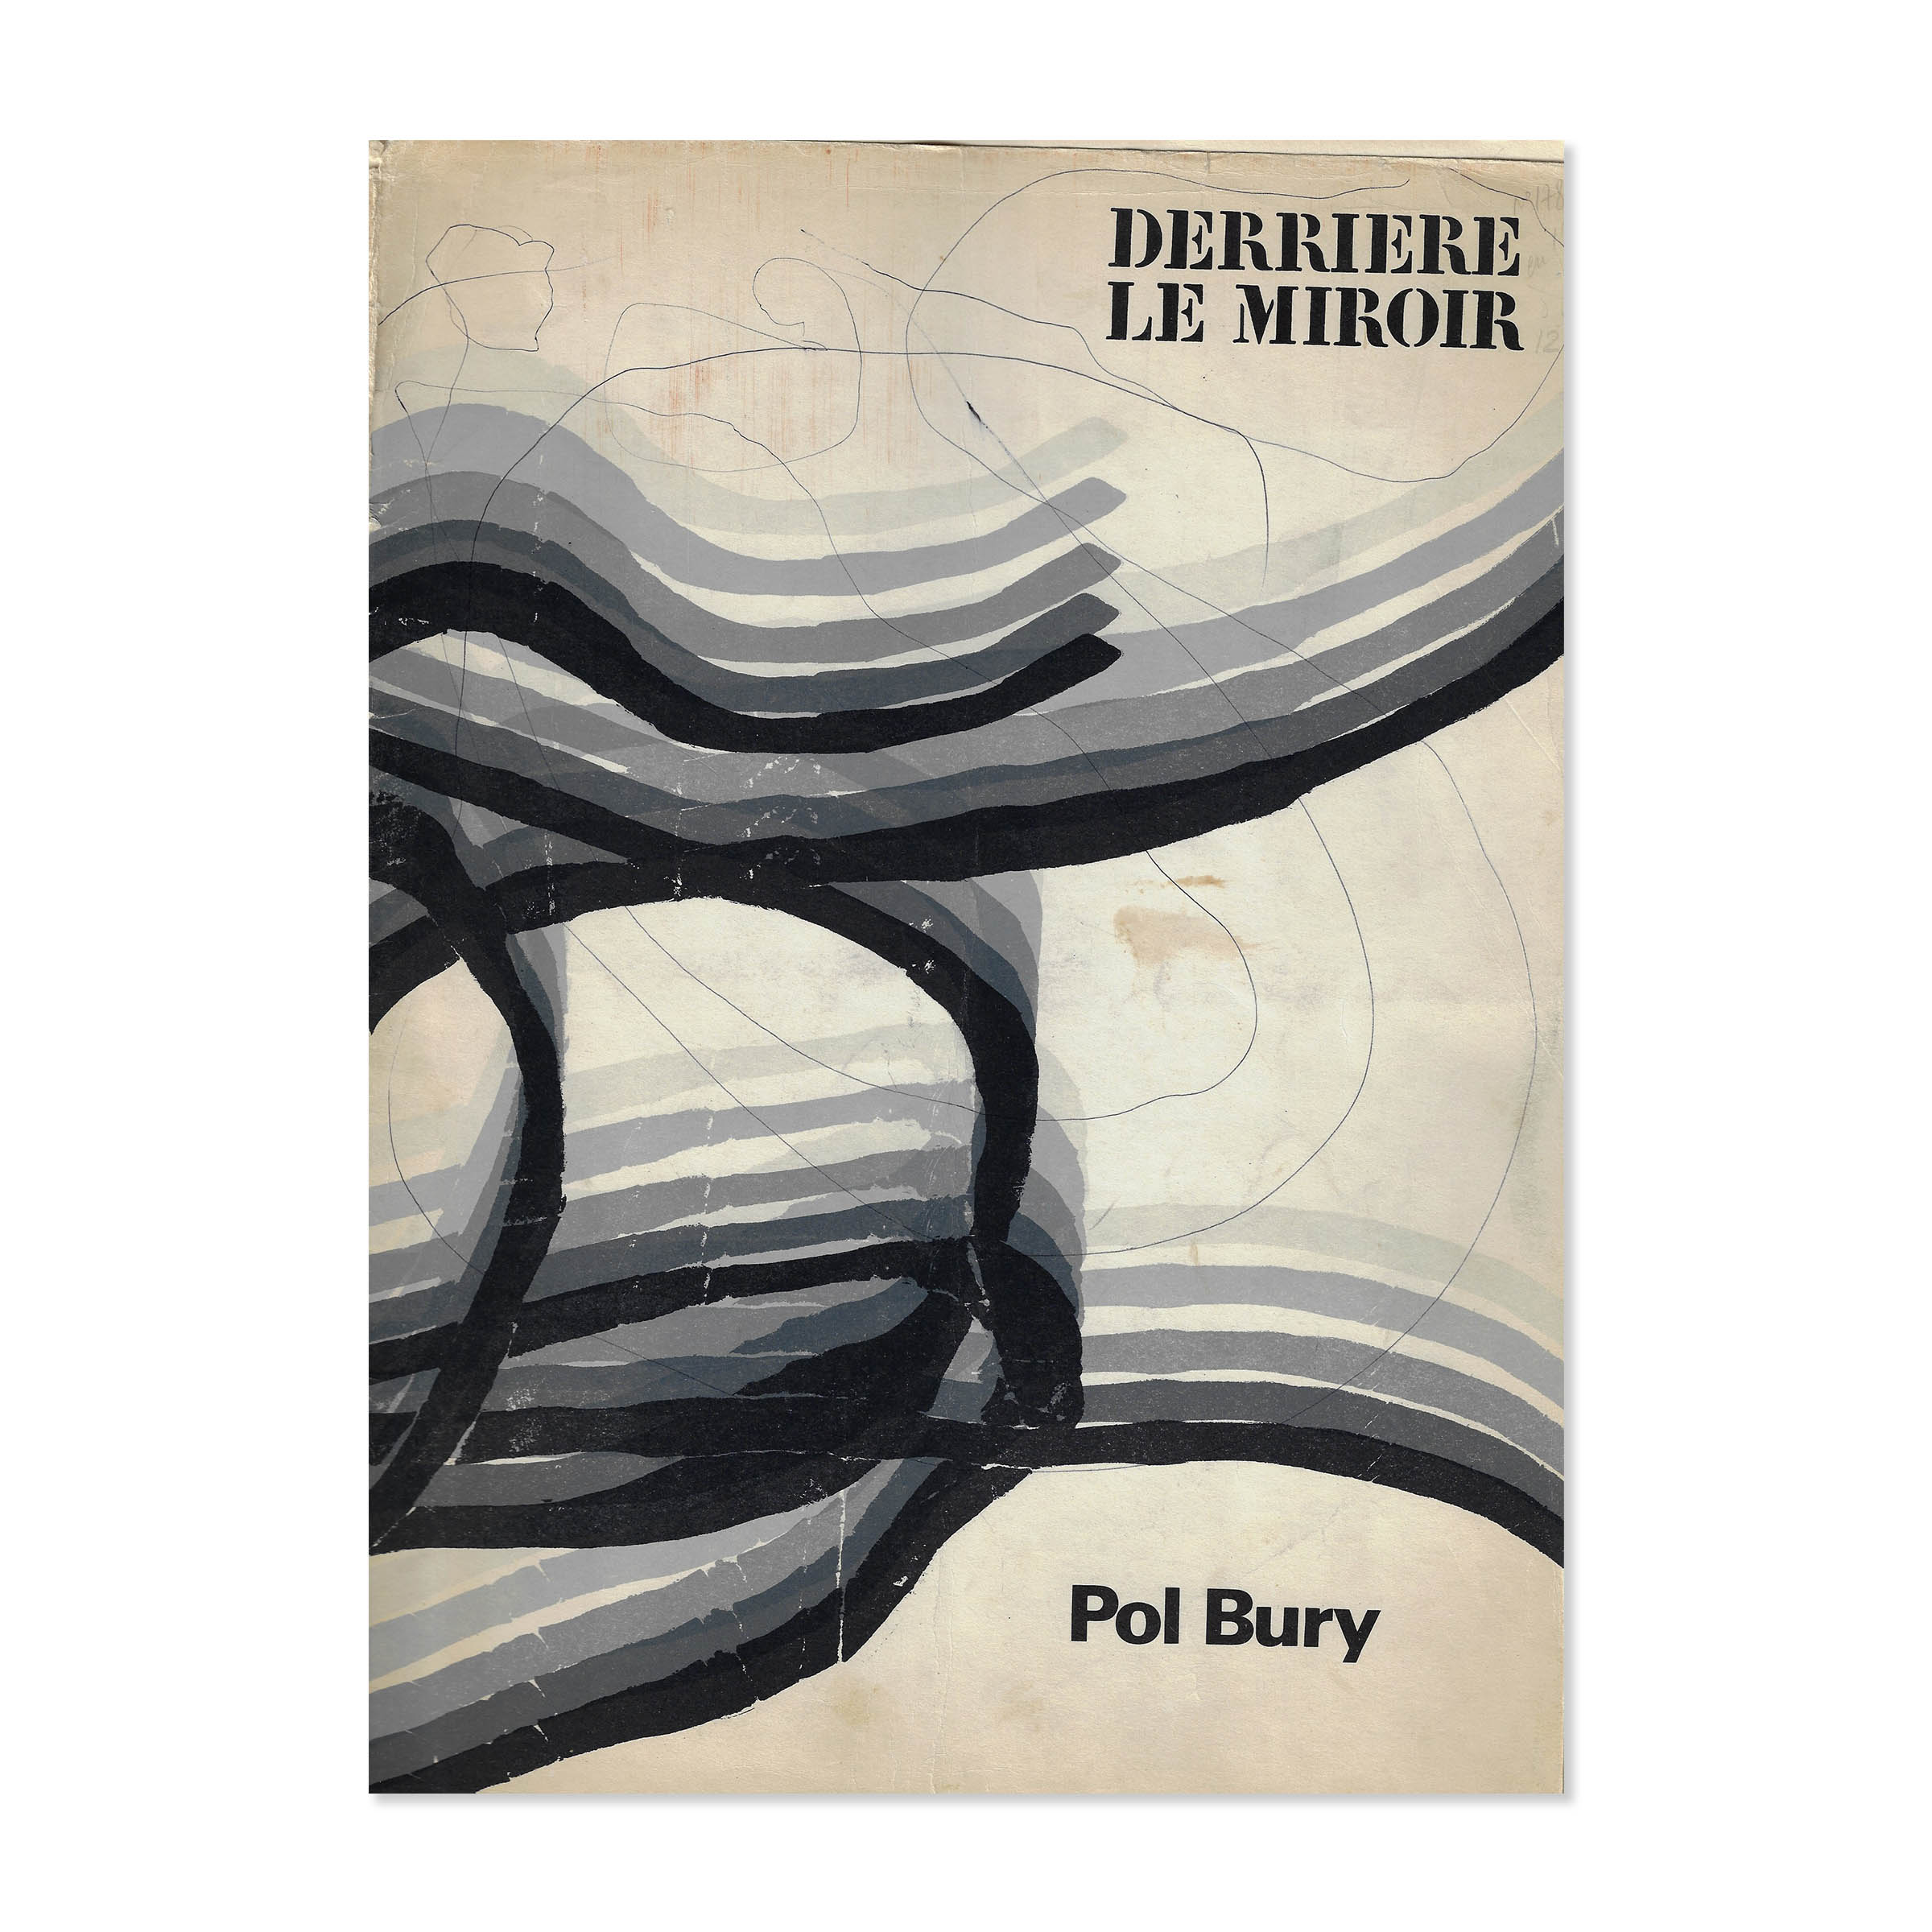 Derrière Le Miroir. Pol Bury. Cover view